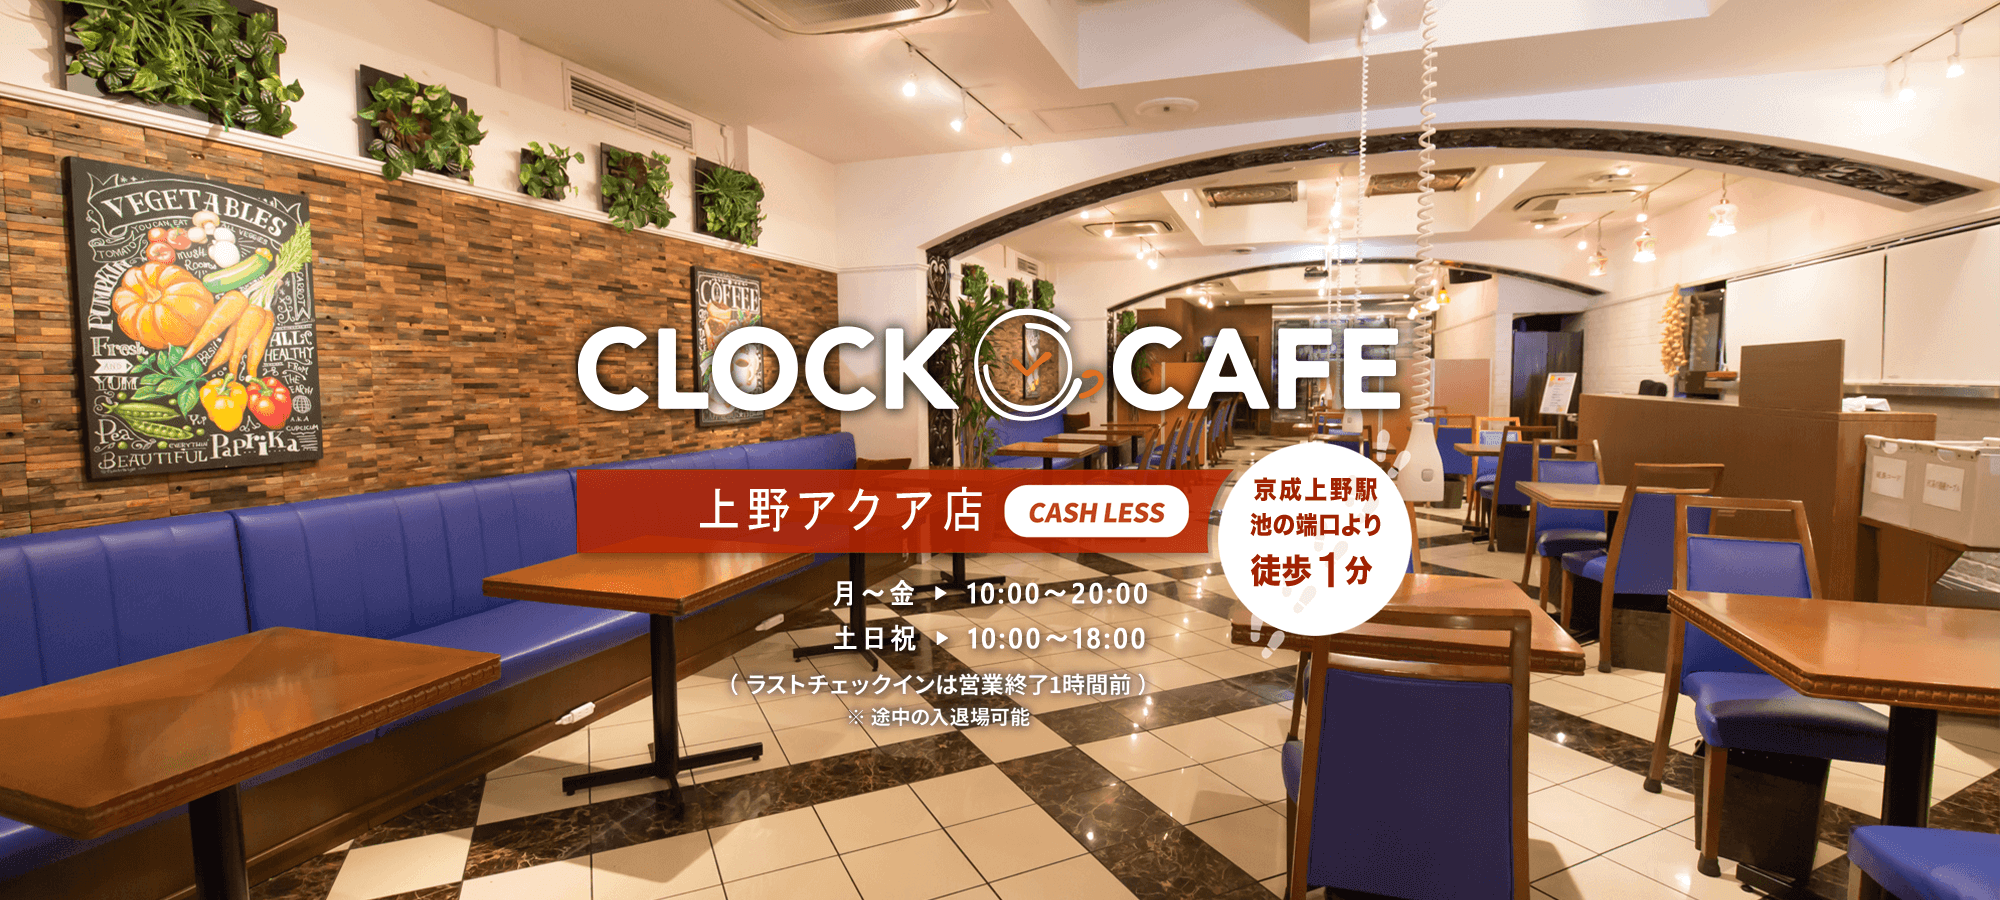 クロックカフェ 上野アクア店